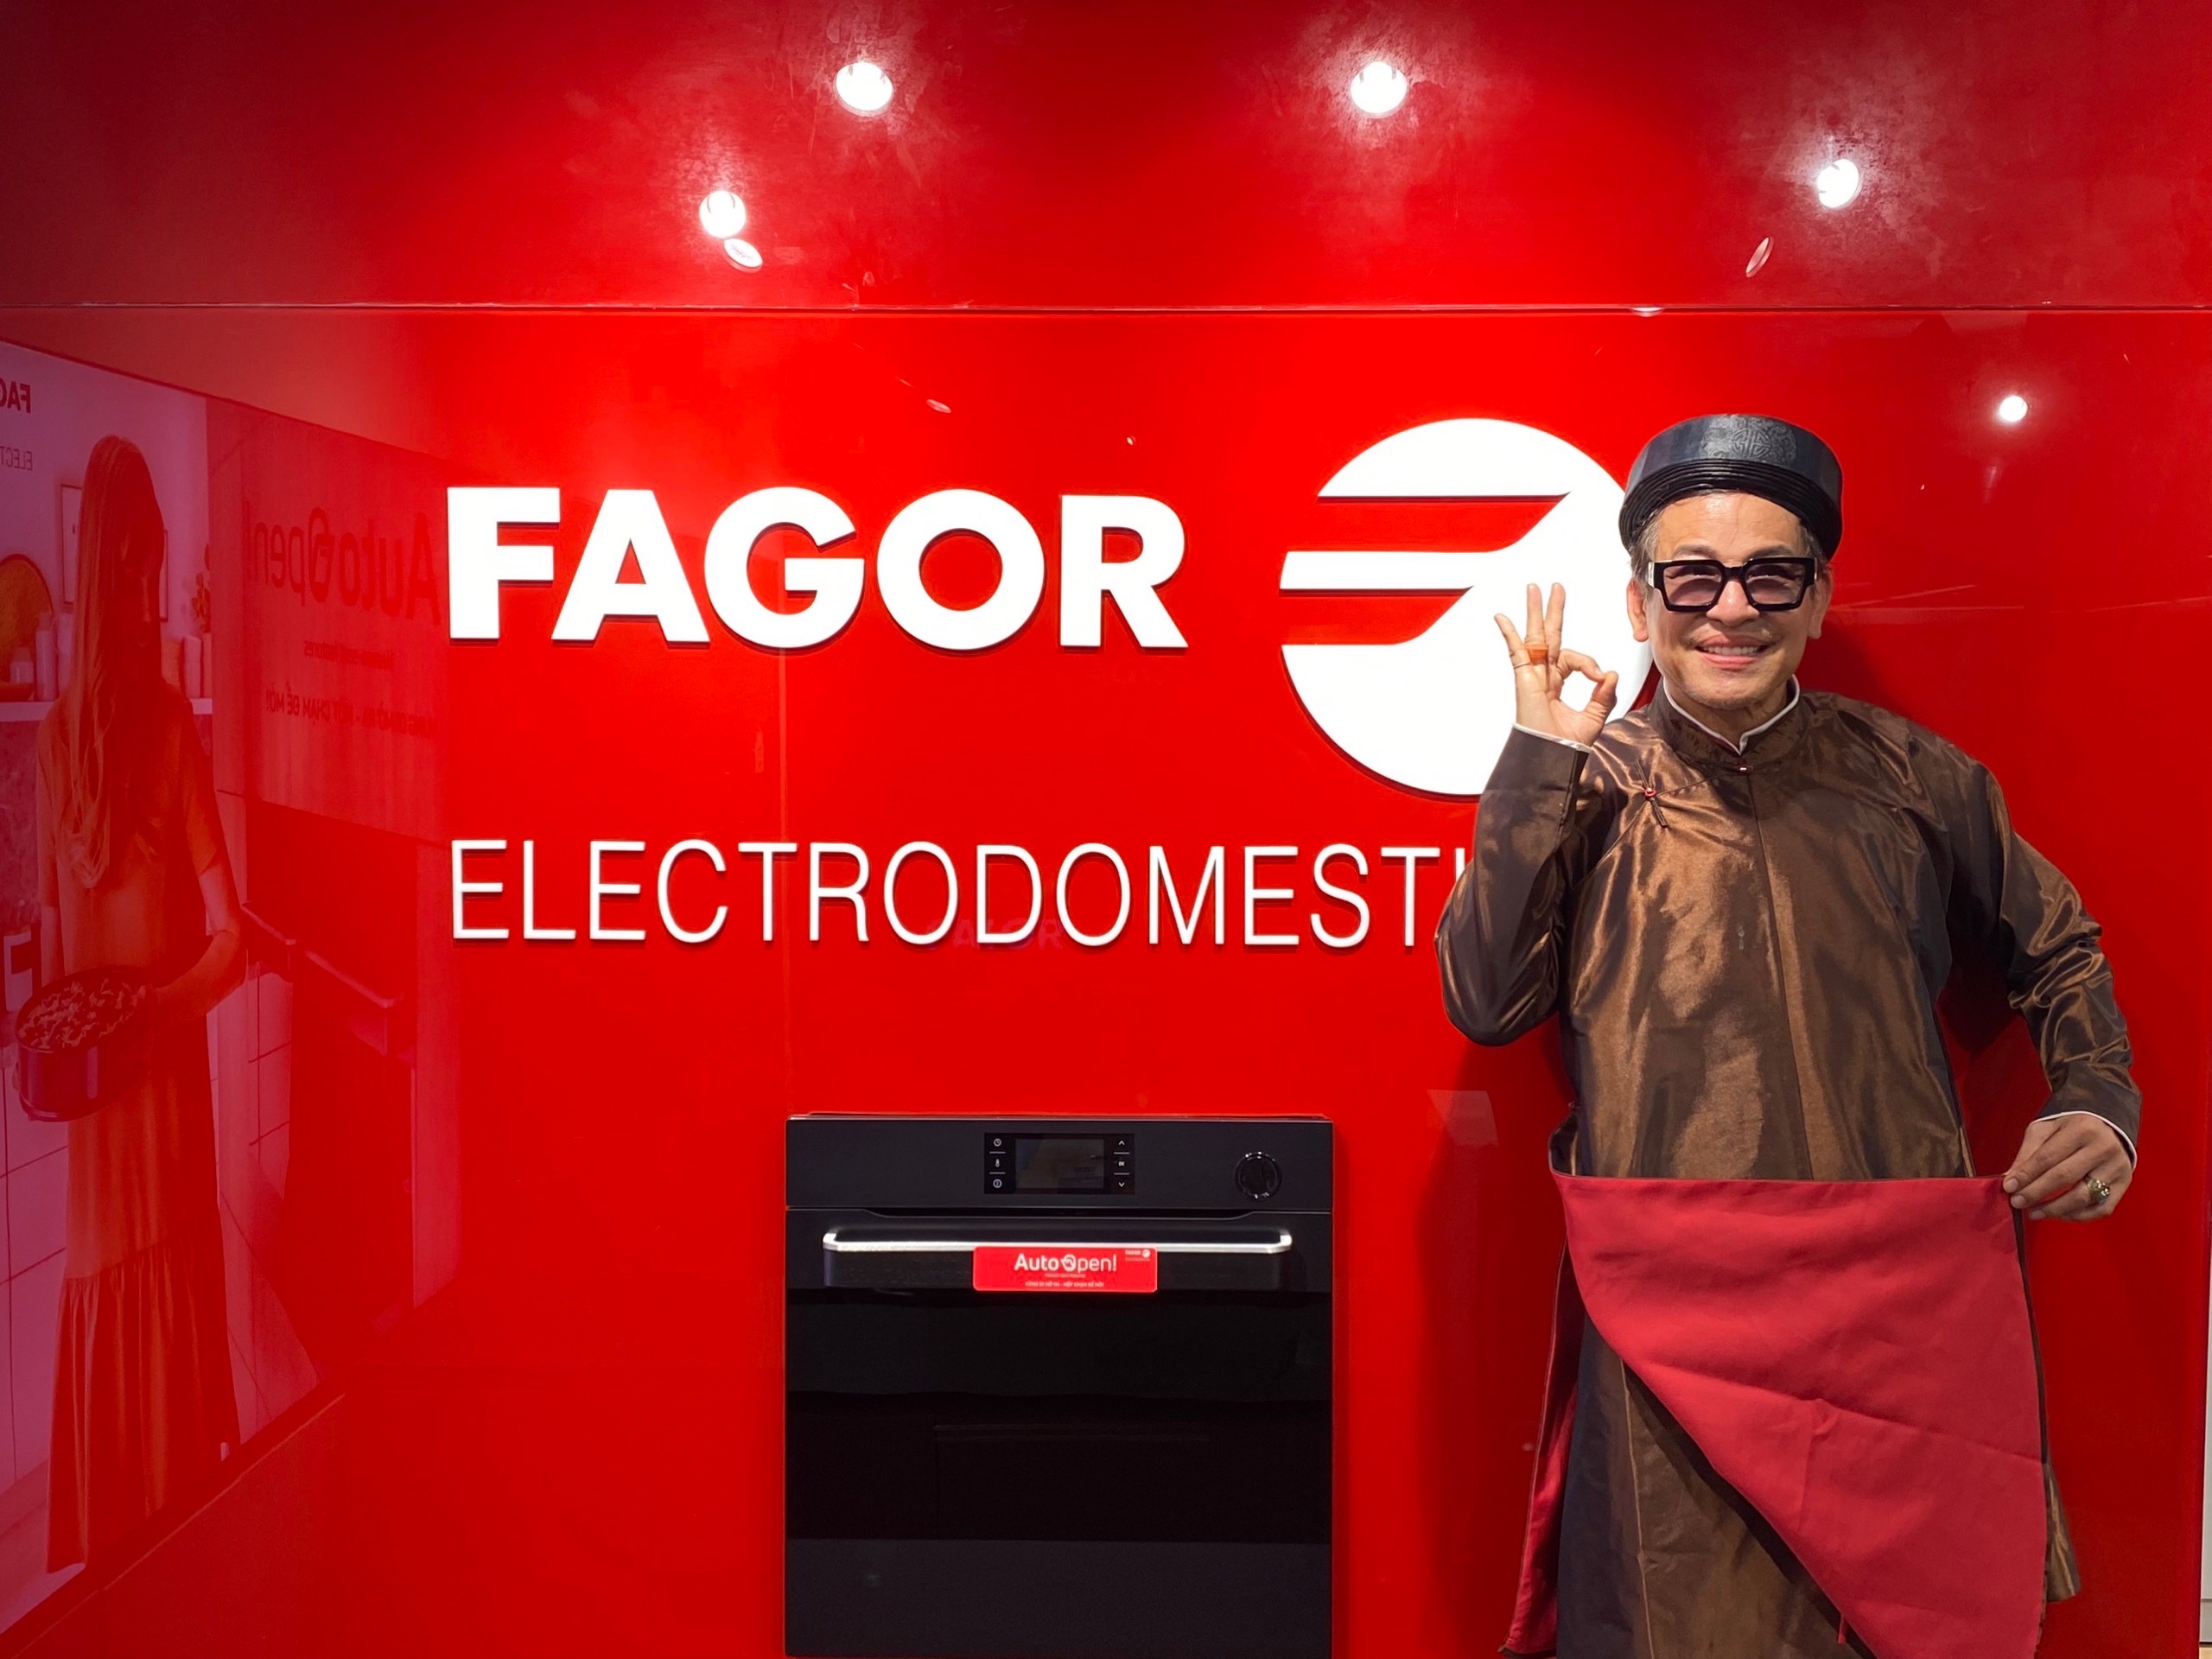 Thương hiệu Fagor - Sản phẩm tuyệt vời cho căn bếp của bạn